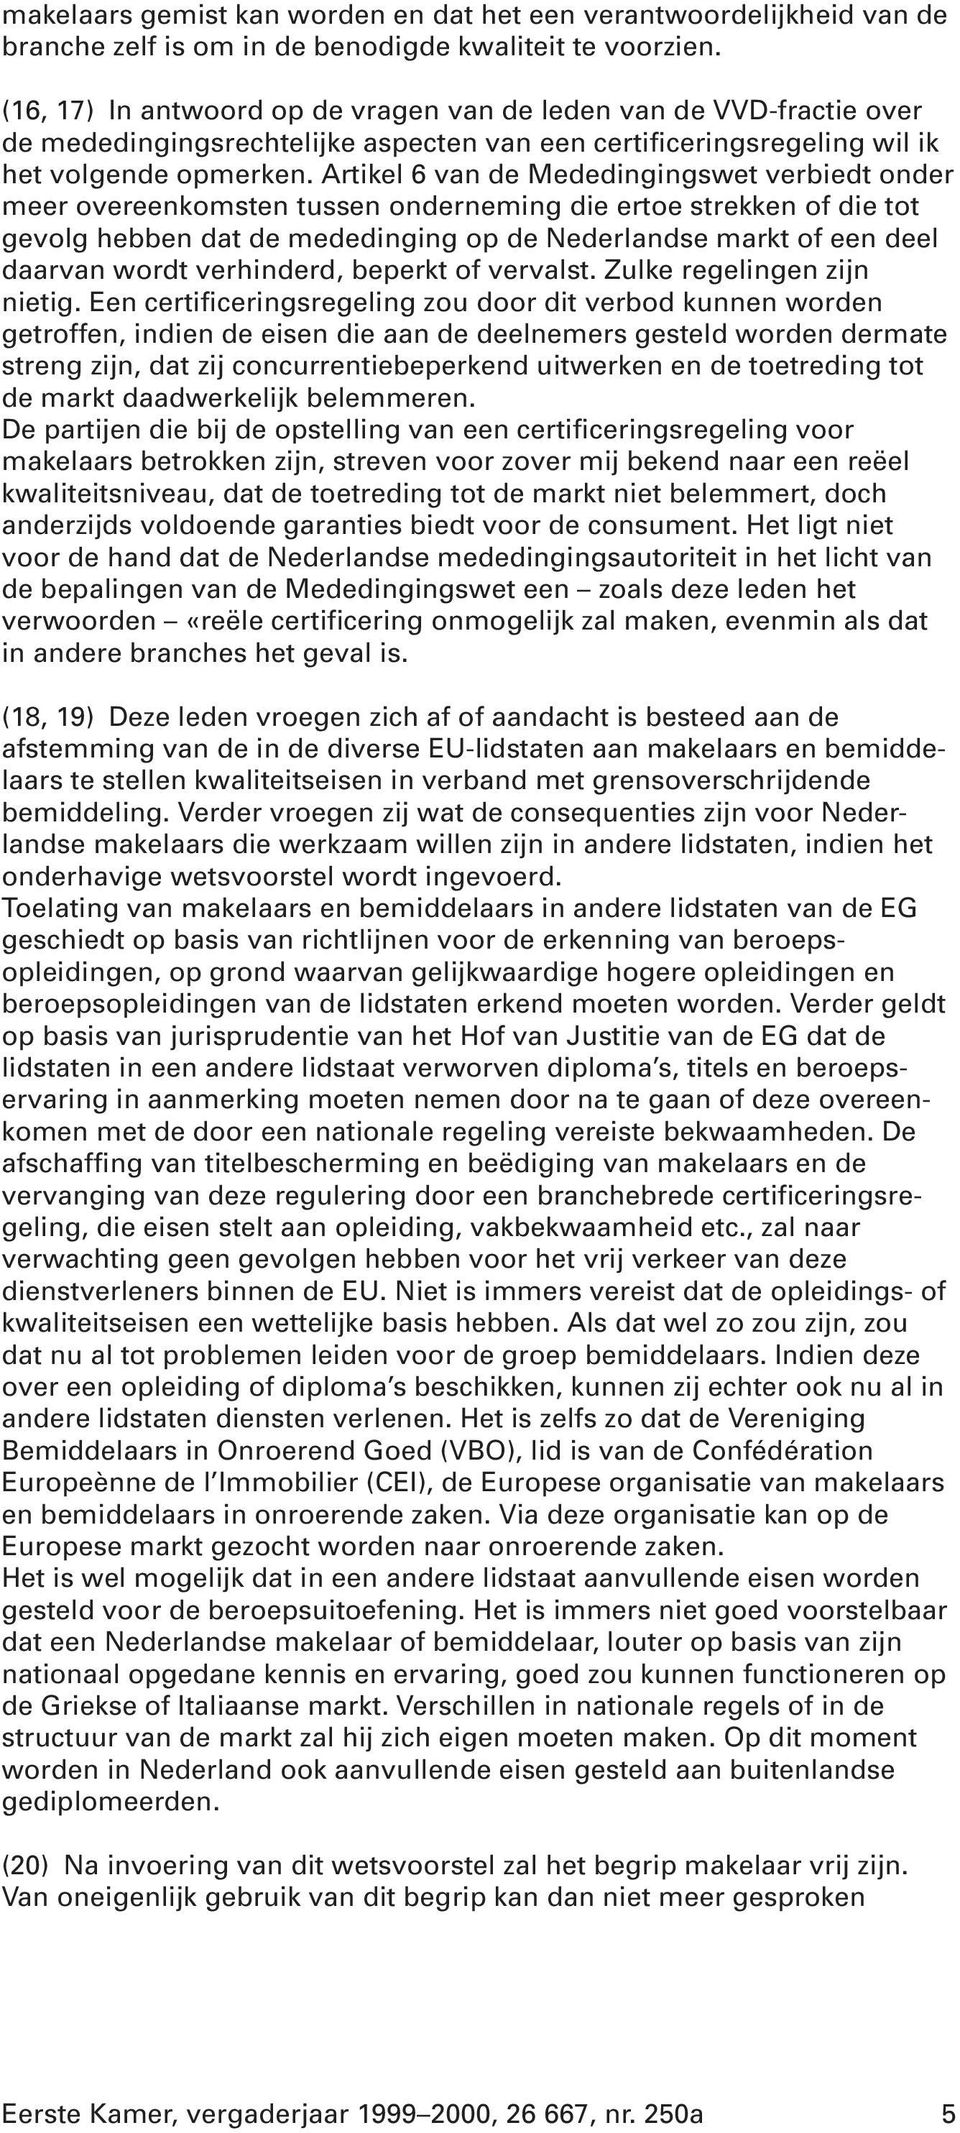 Artikel 6 van de Mededingingswet verbiedt onder meer overeenkomsten tussen onderneming die ertoe strekken of die tot gevolg hebben dat de mededinging op de Nederlandse markt of een deel daarvan wordt